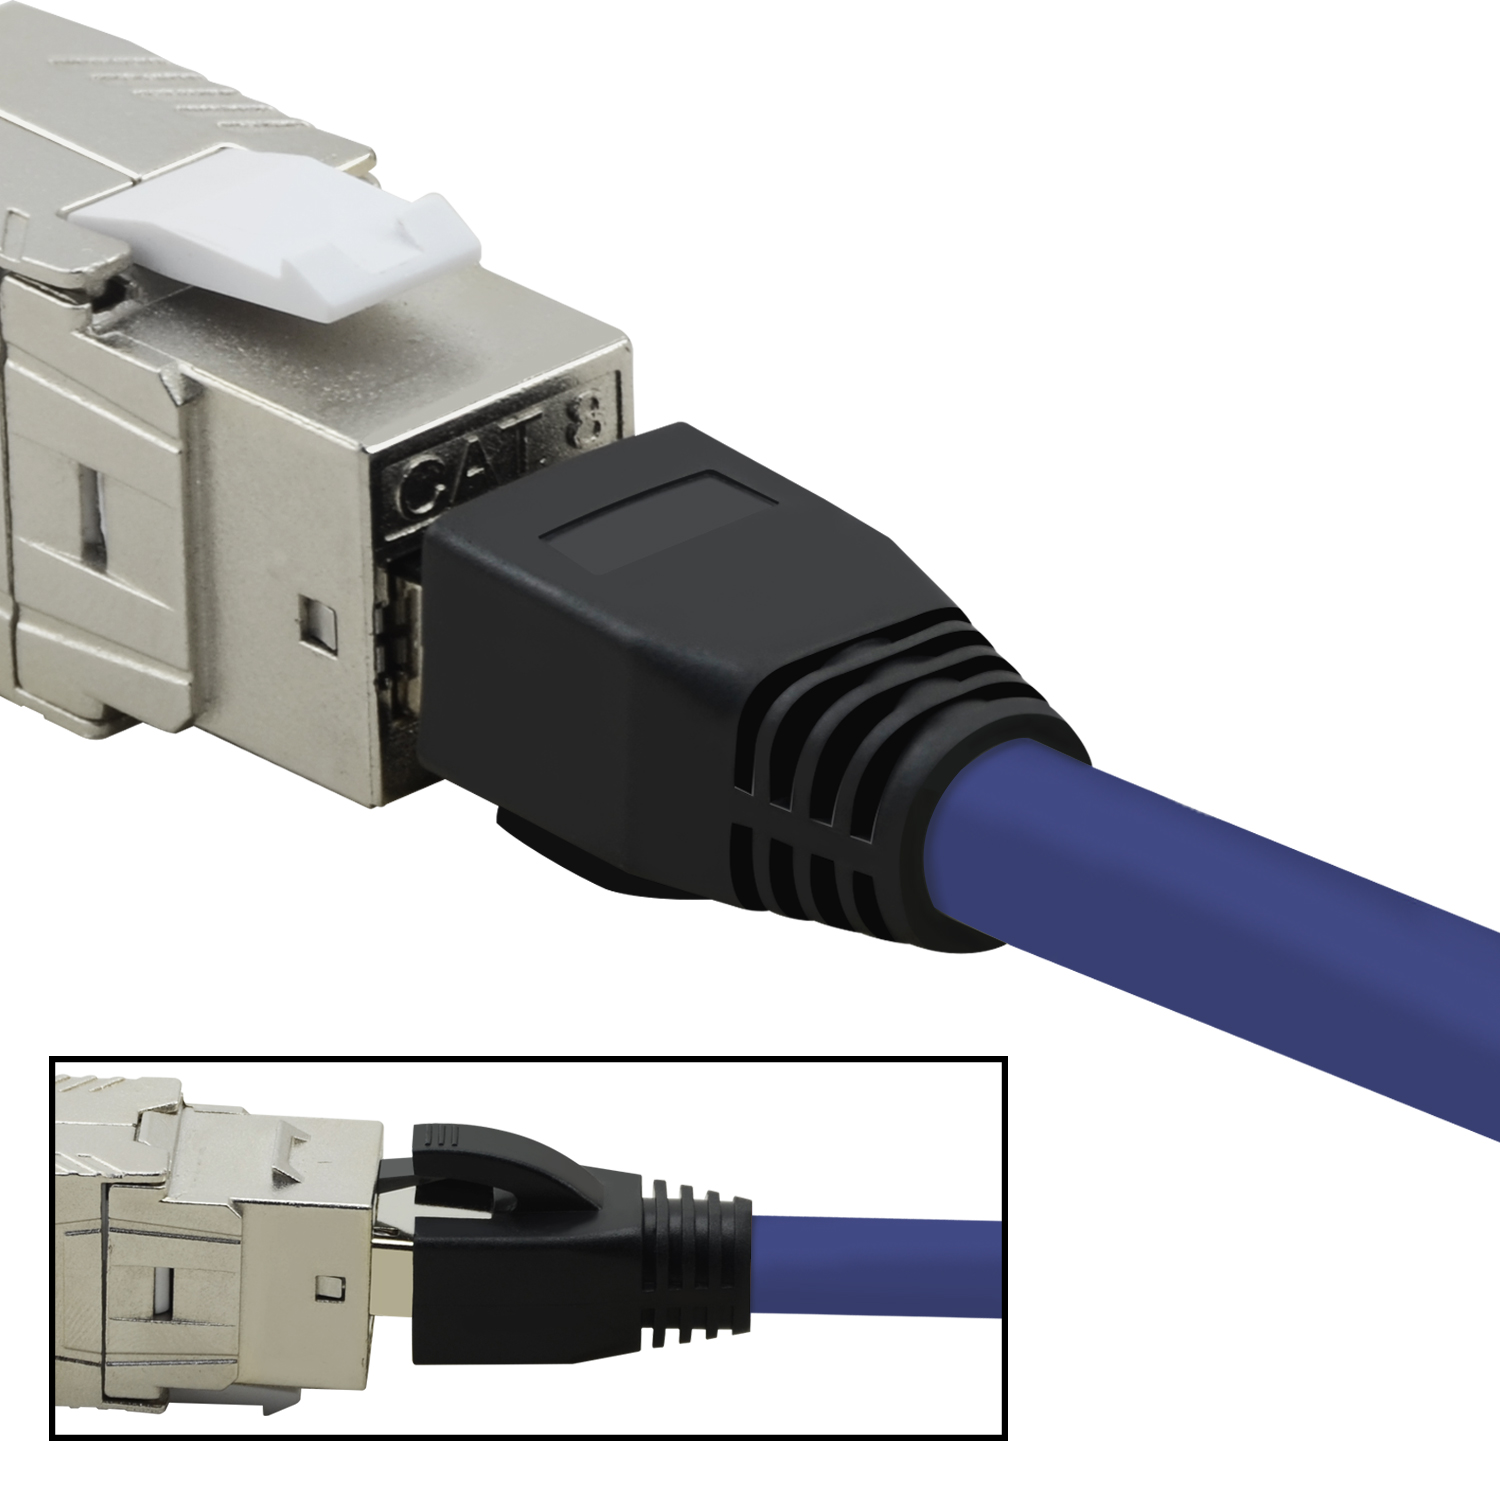 m Netzwerkkabel, violett, Patchkabel Netzwerkkabel Pack / GBit, 1,5m 40 S/FTP 1,5 TPFNET 5er